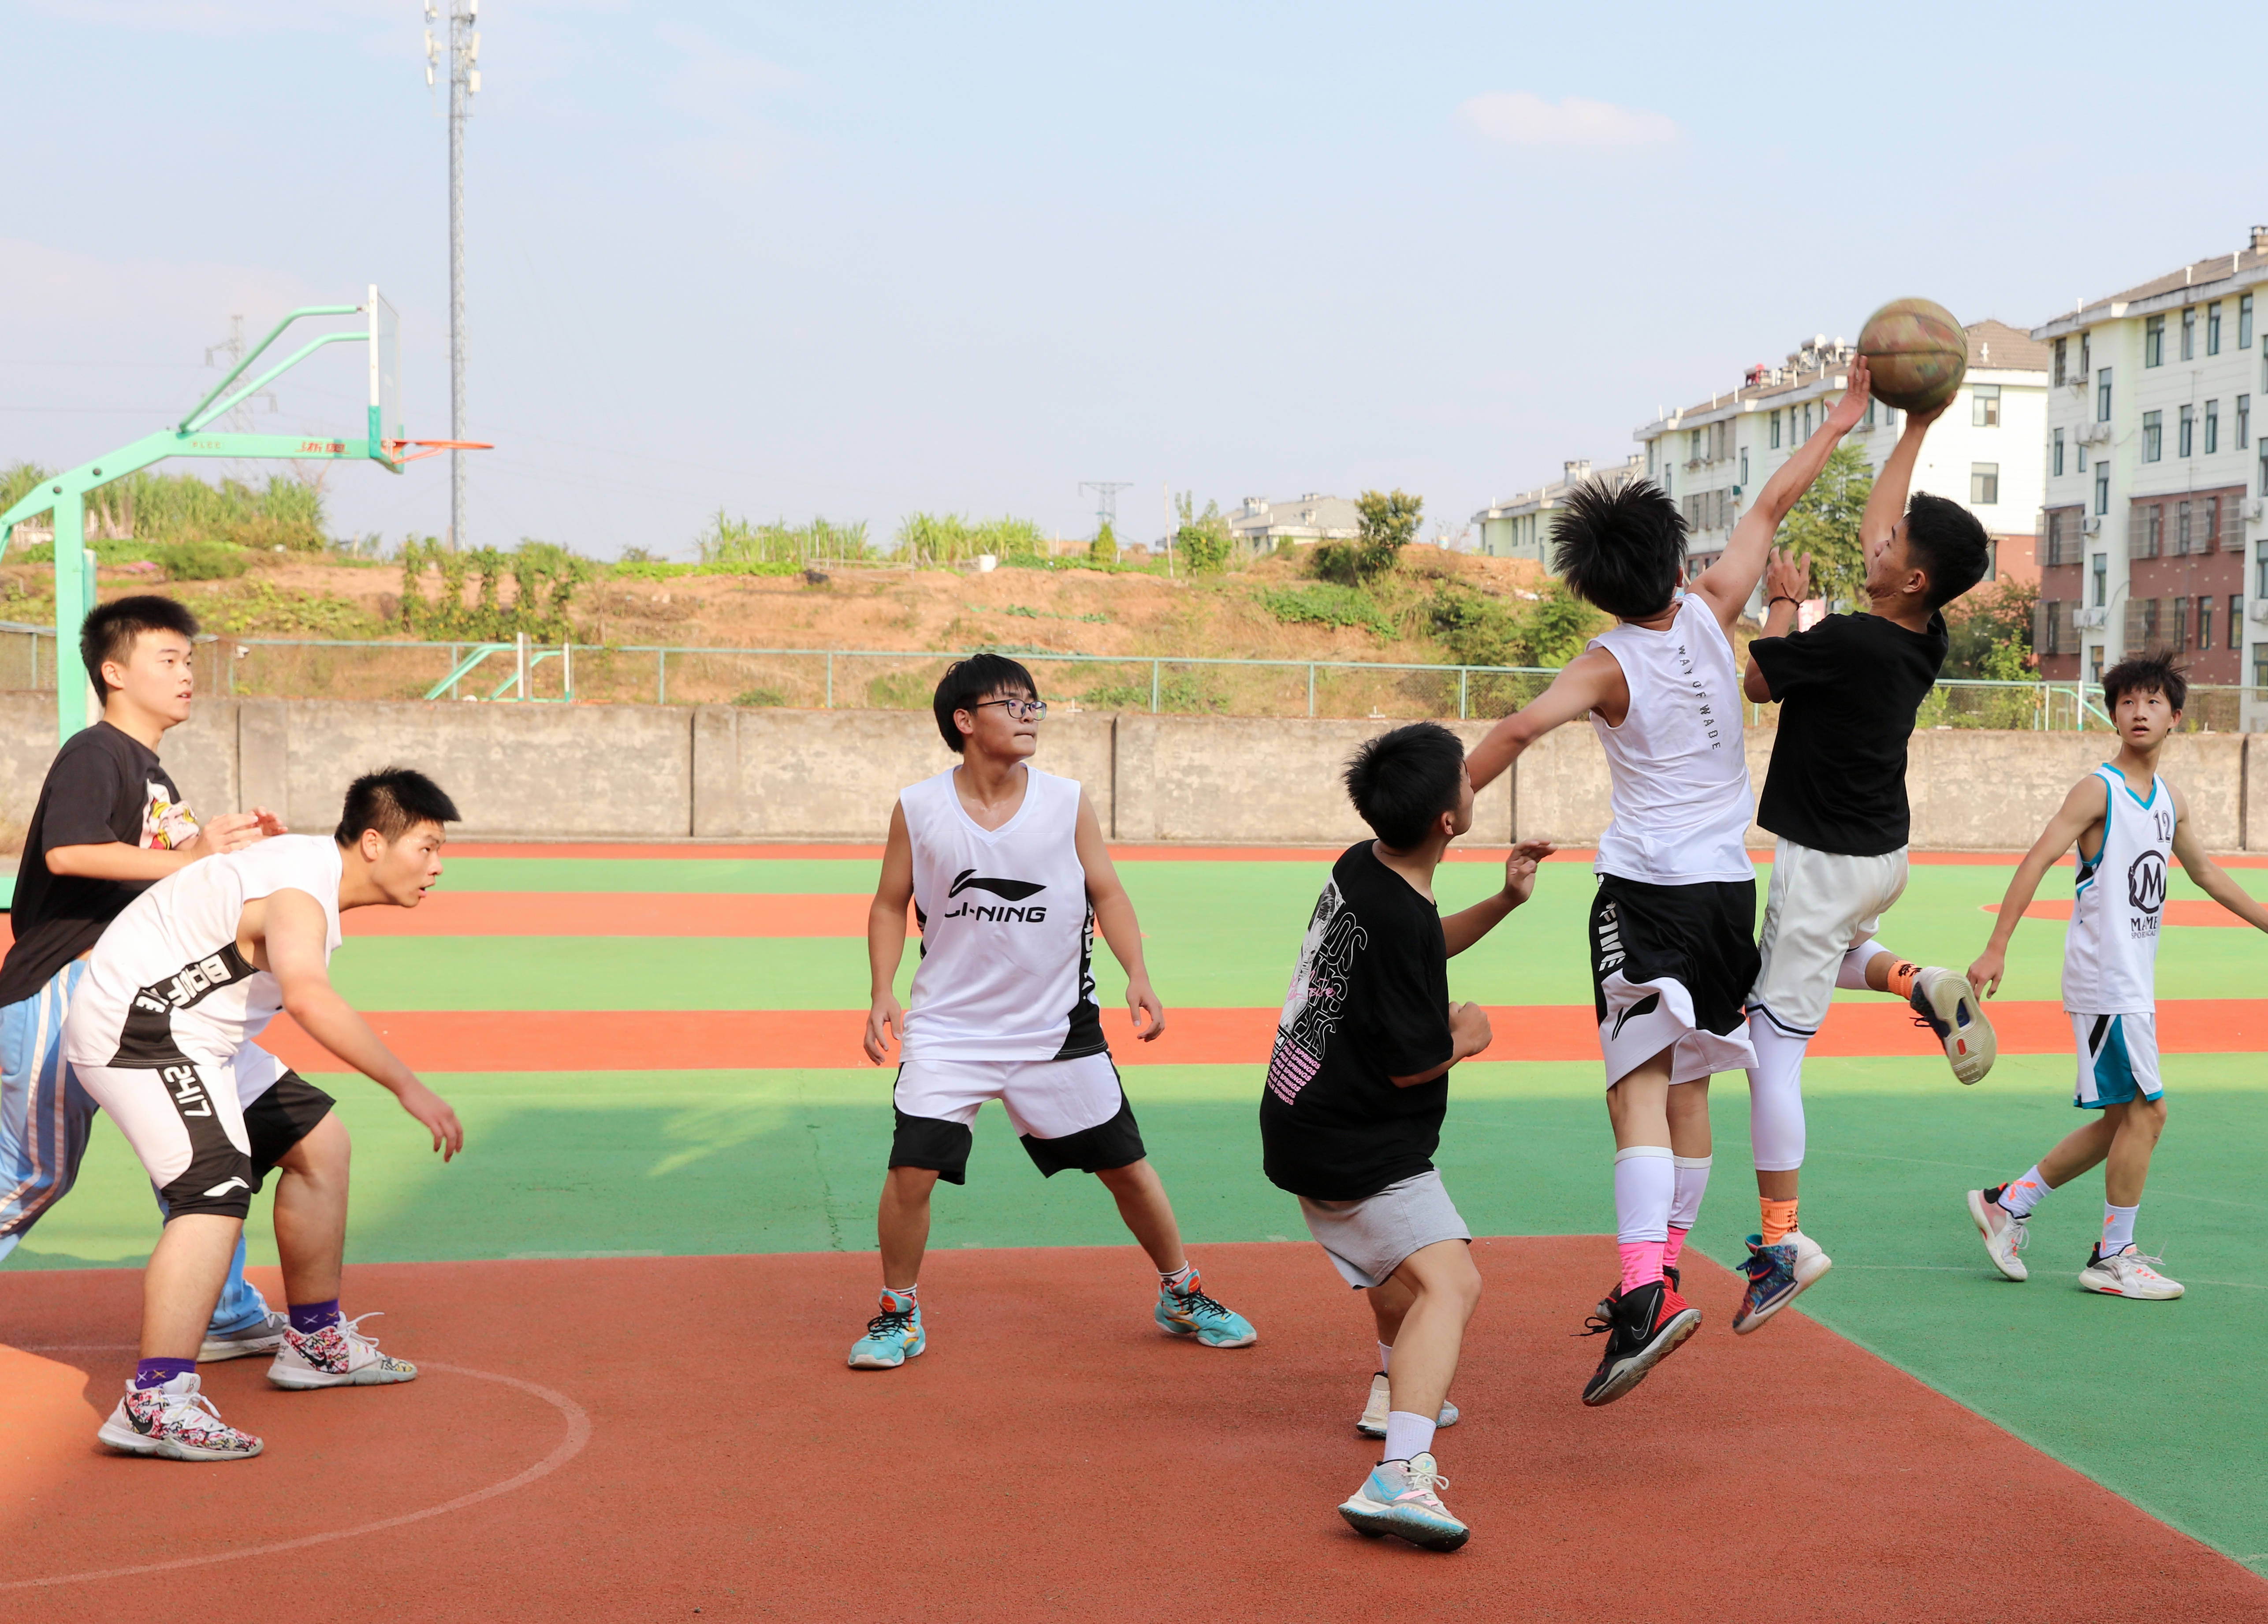 篮球赛的开展,丰富了学生校园文化生活,提高了学生的身体素质,培养了